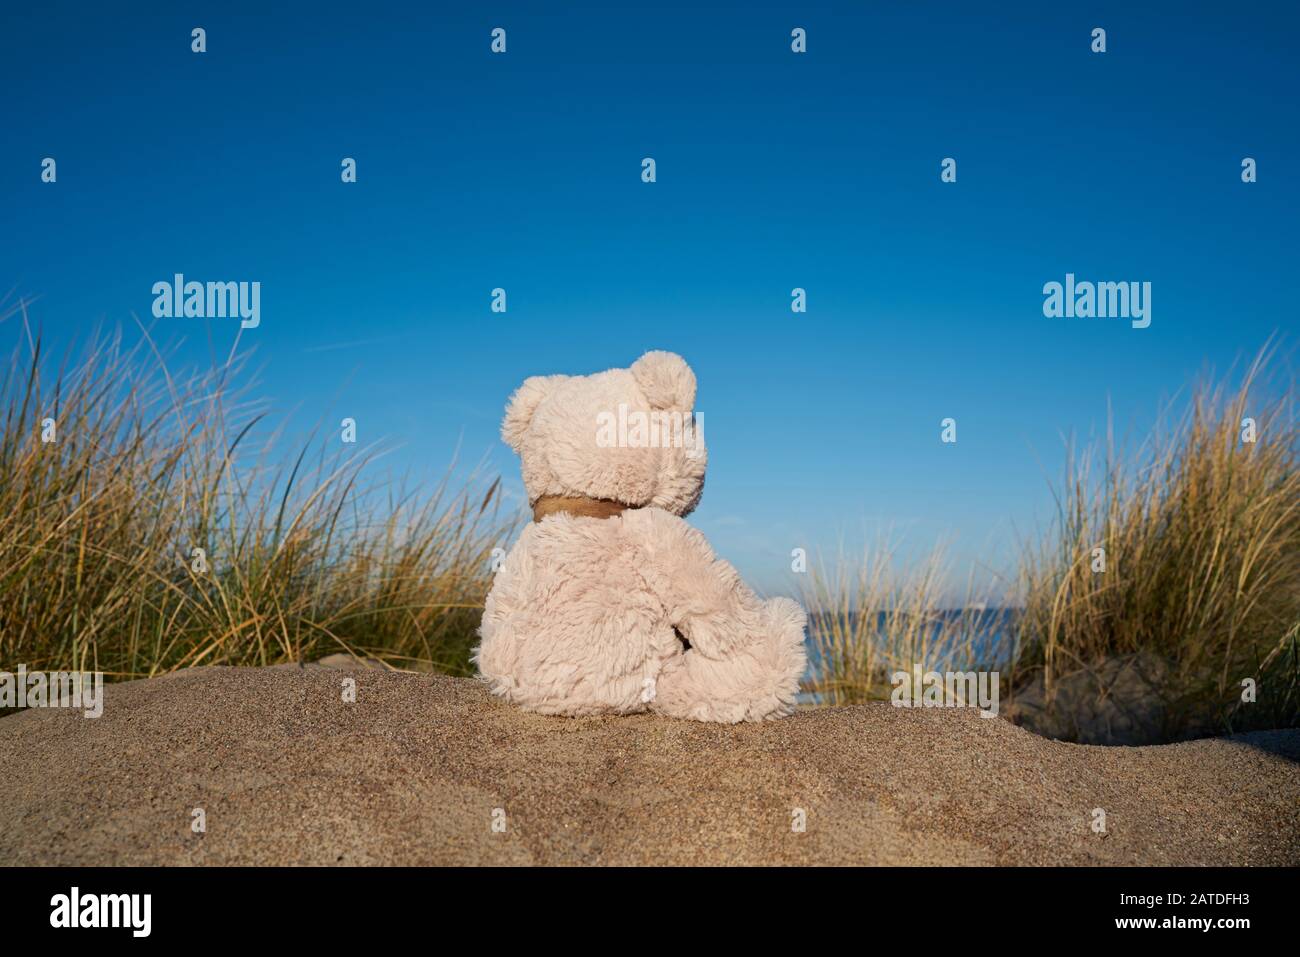 Triste ours en peluche avec un fanfare sur la plage de la mer Baltique près de Warnemünde en Allemagne Banque D'Images